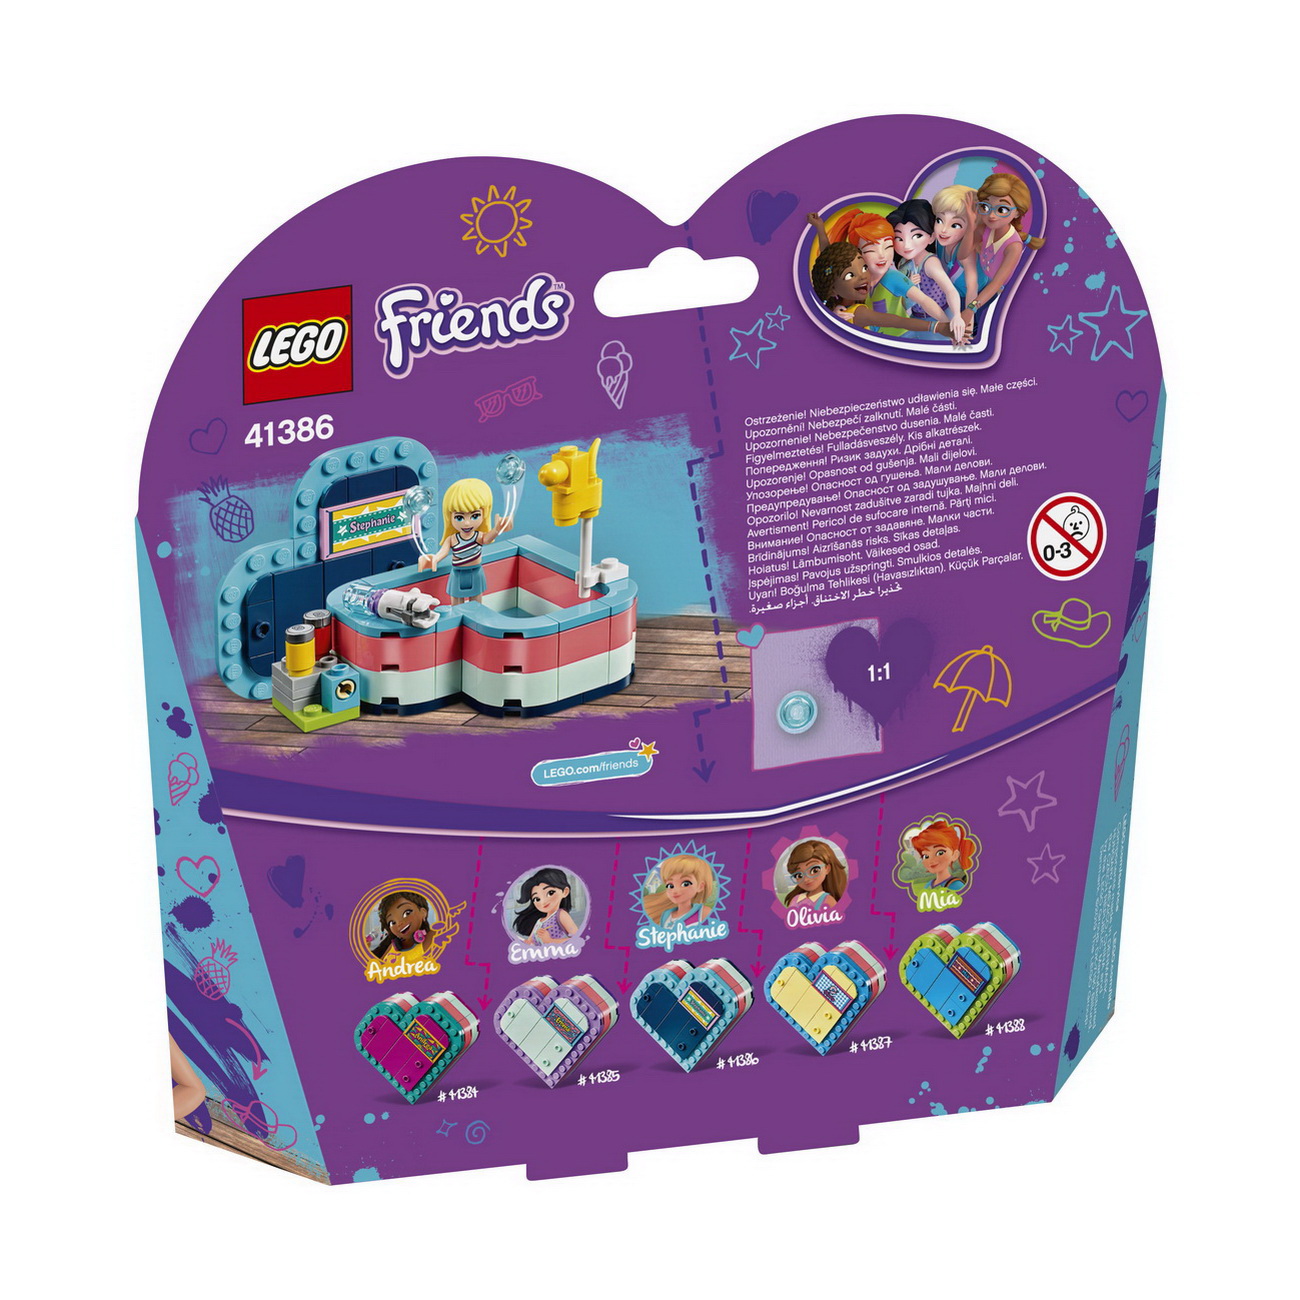 LEGO Friends (41386) Stephanies sommerliche Herzbox